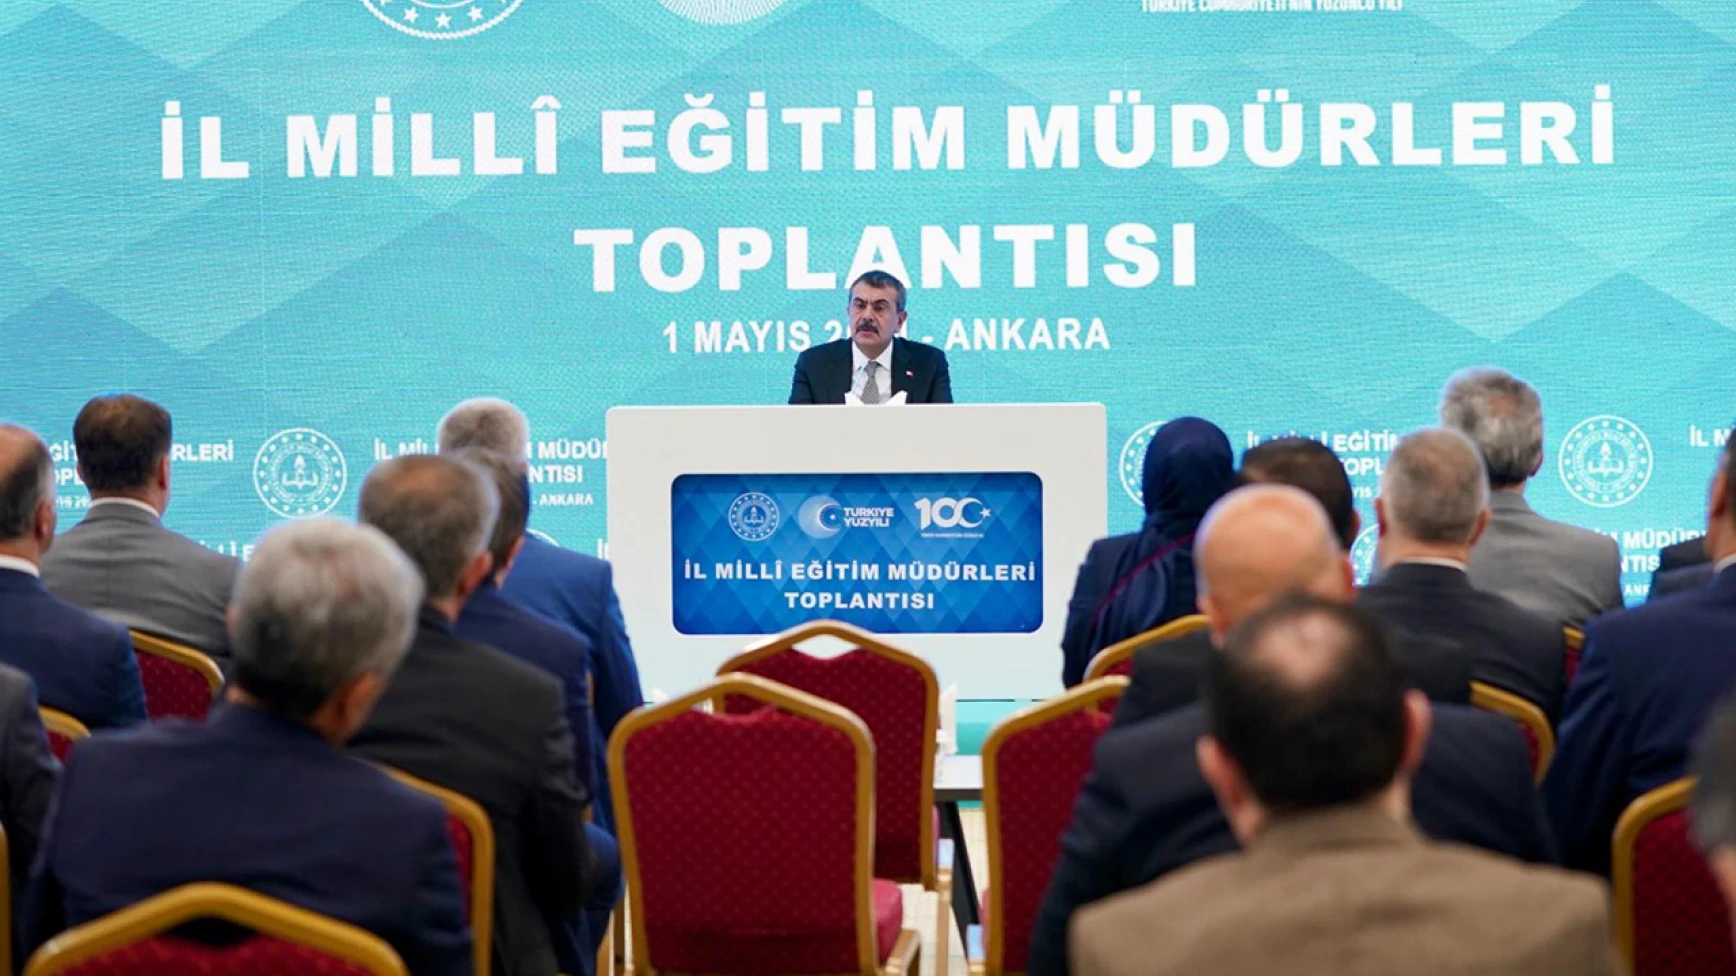 81 İlin Millî Eğitim Müdürü Ankara’ya çağrıldı